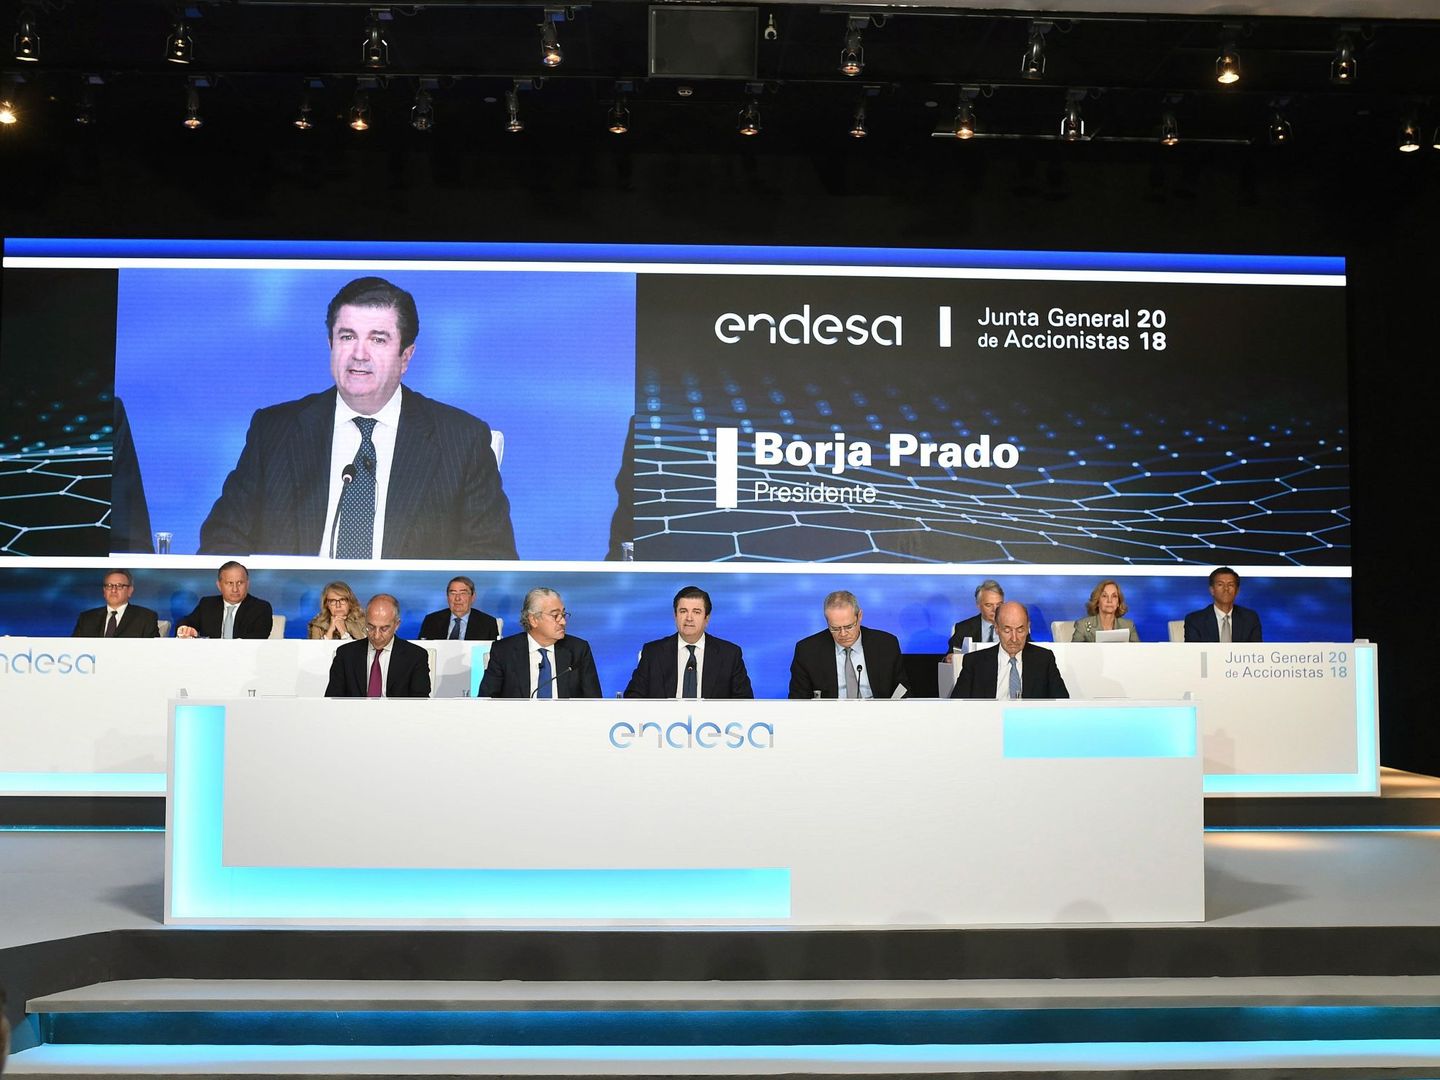 El presidente de la compañía de electricidad Endesa, Borja Prado, interviene durante la Junta de accionistas de Endesa en 2018 (EFE)